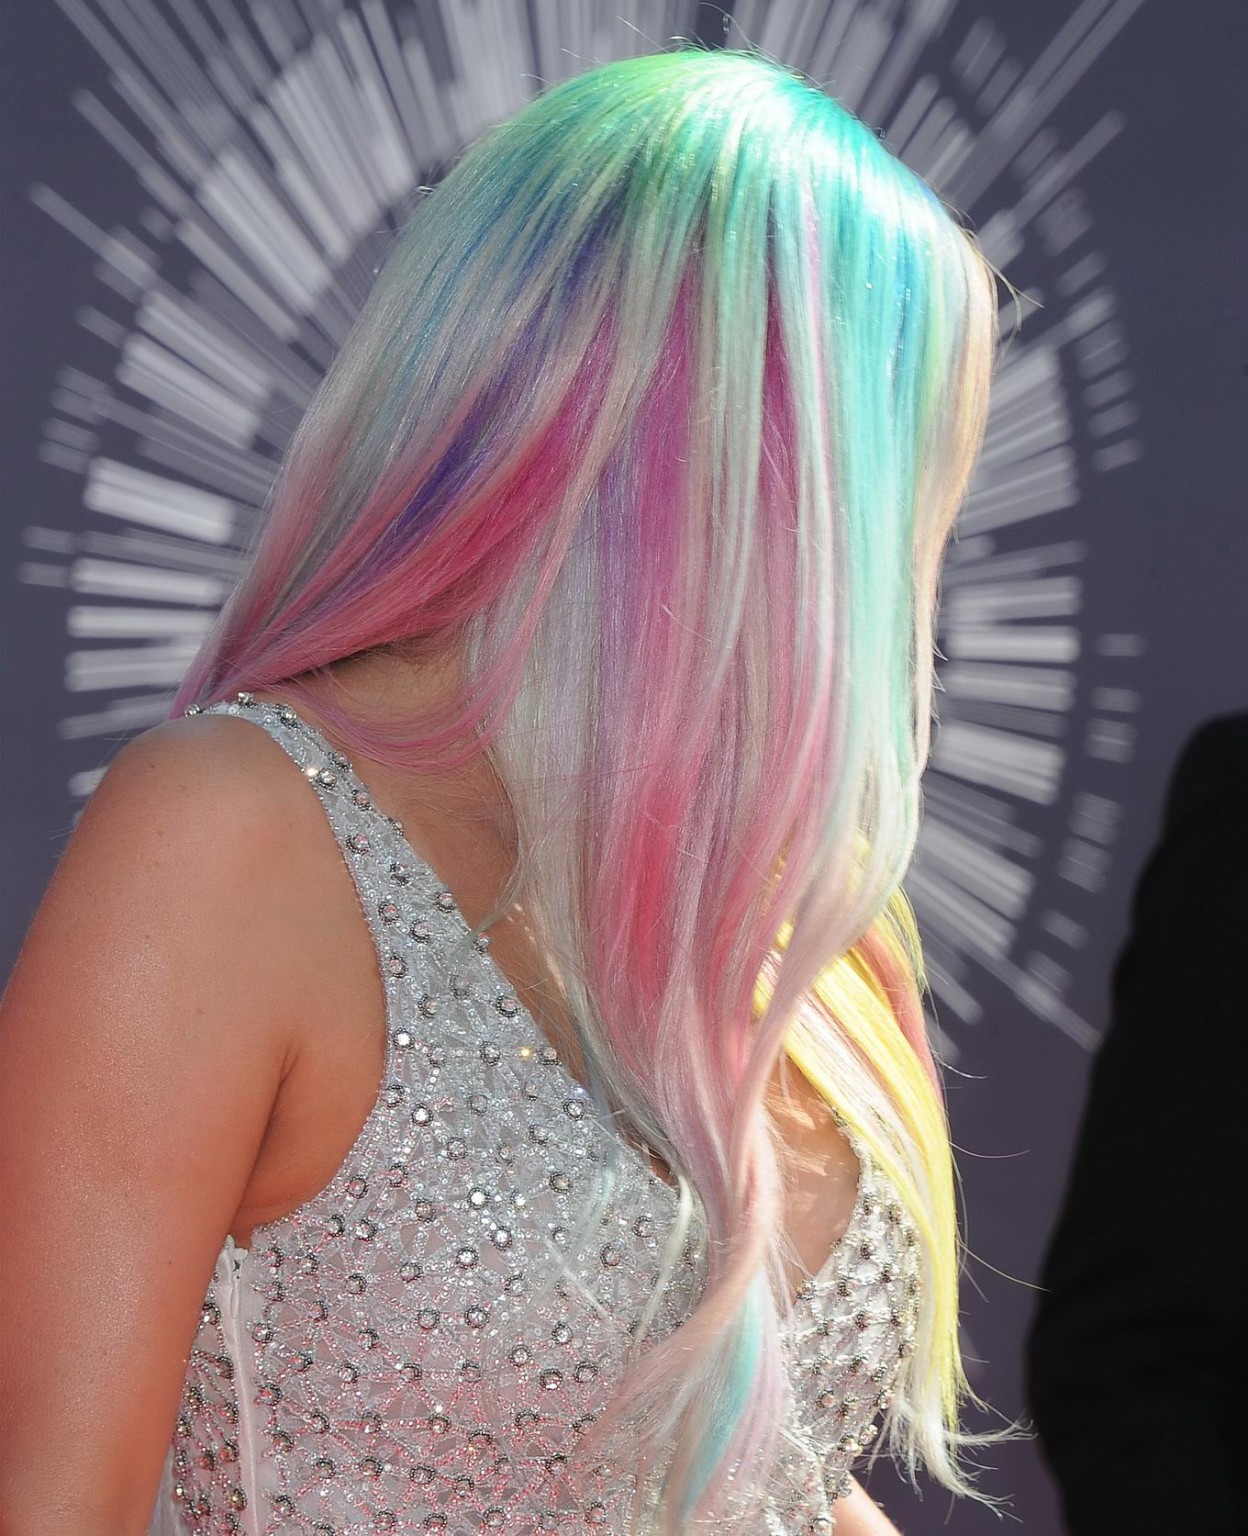 Kesha mostrando un enorme escote en los mtv video music awards 2014 en inglewood
 #75186979